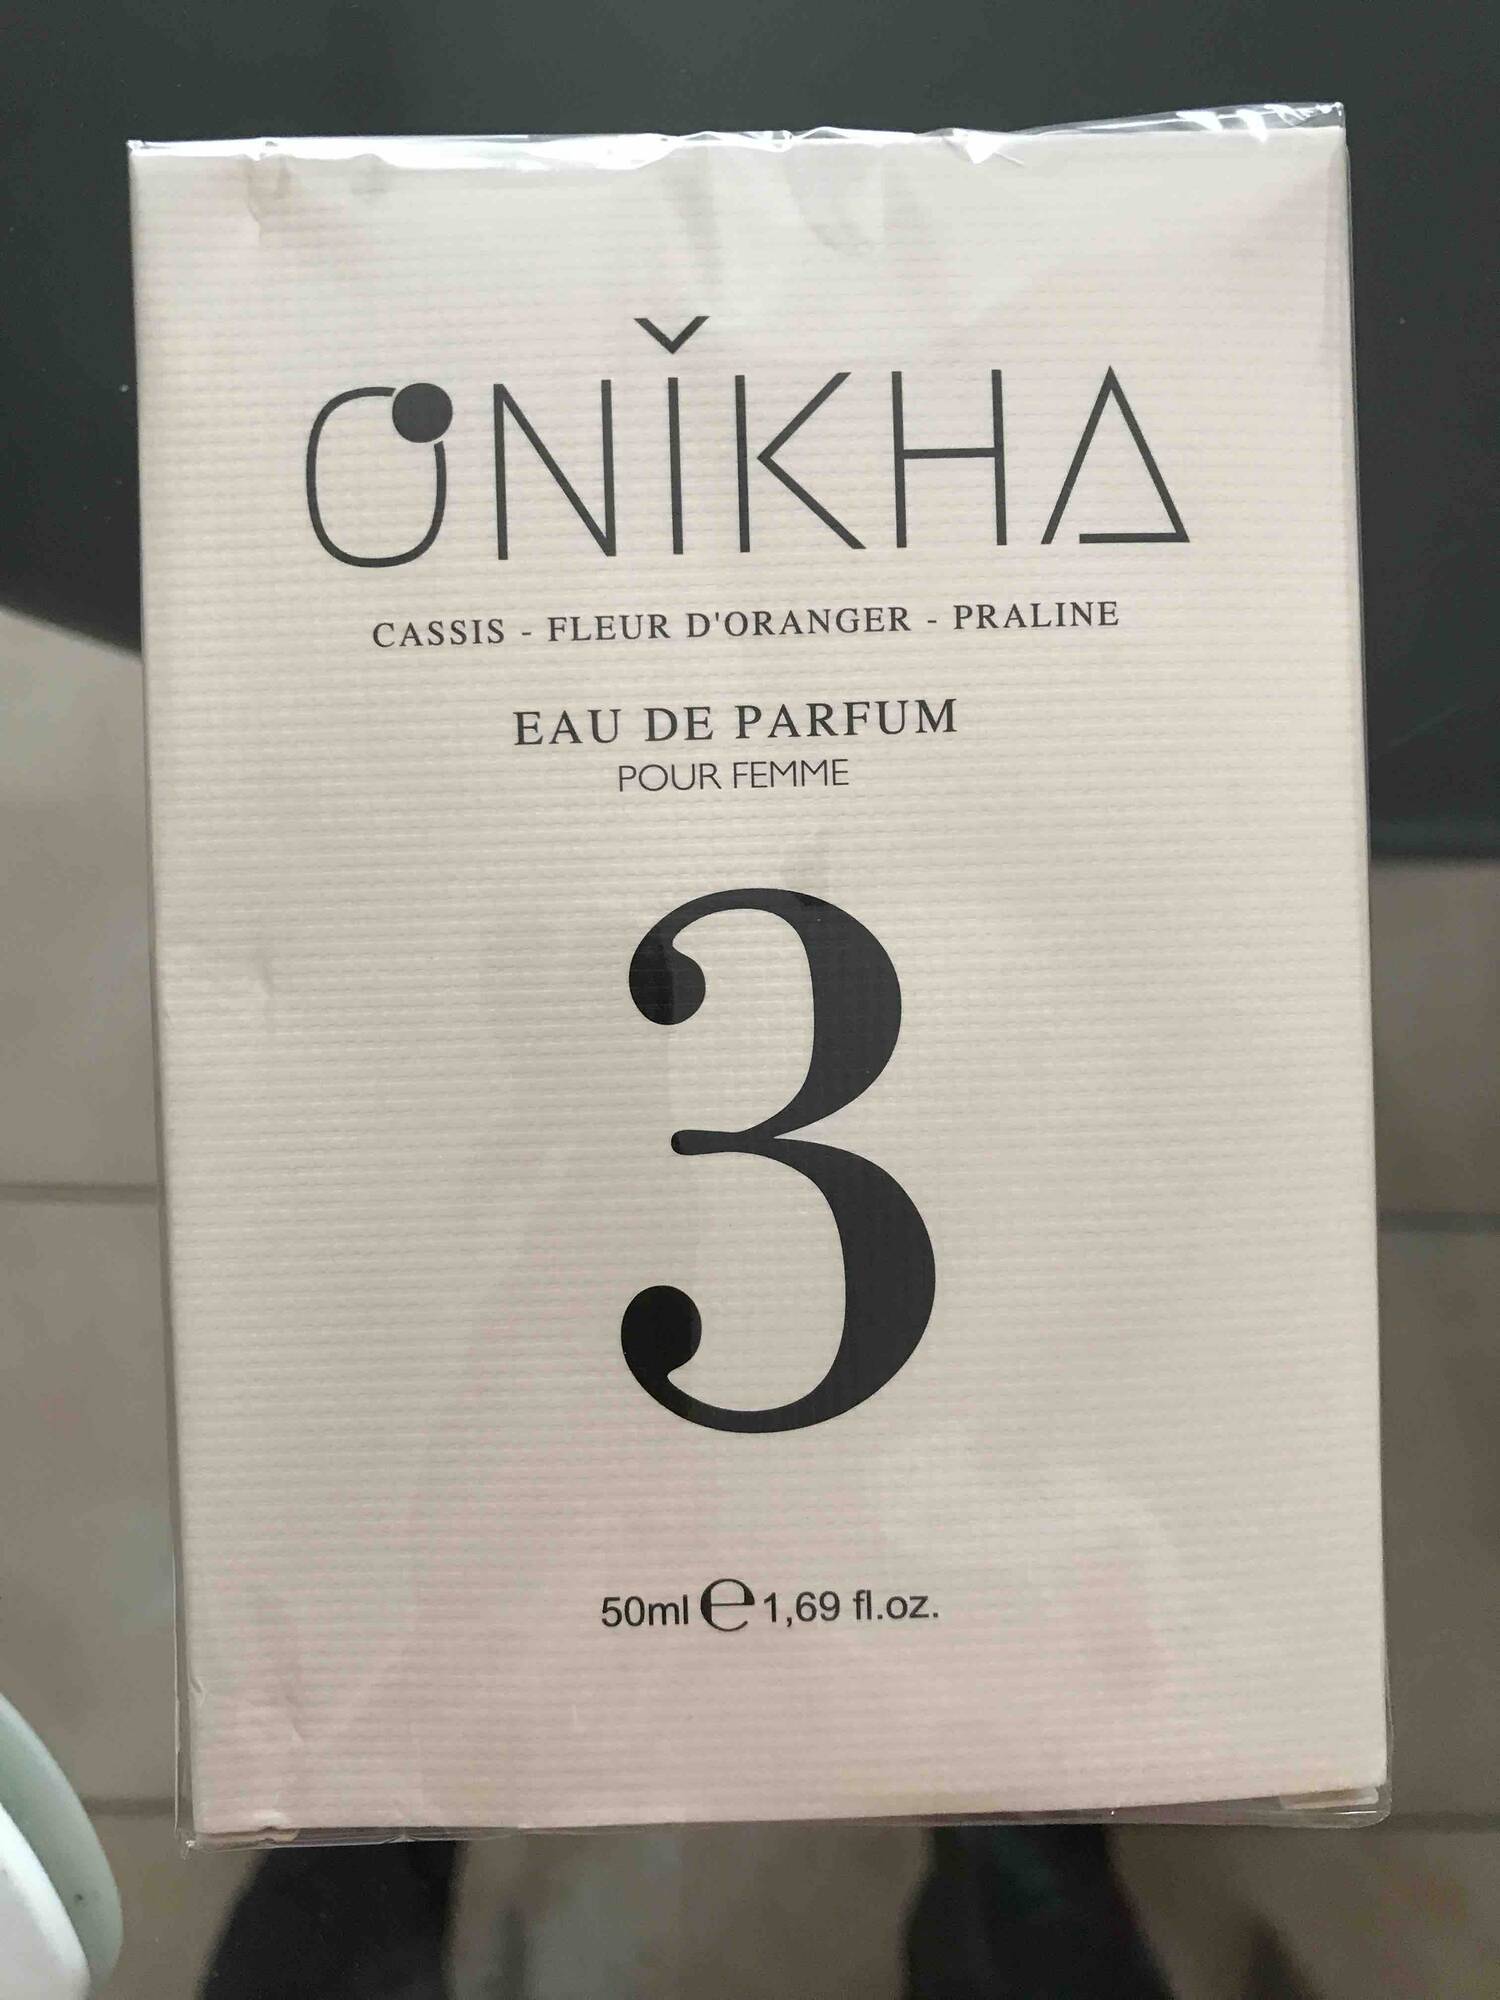 ONIKHA - Cassis, fleur d'oranger, praline - Eau de parfum pour femme 3